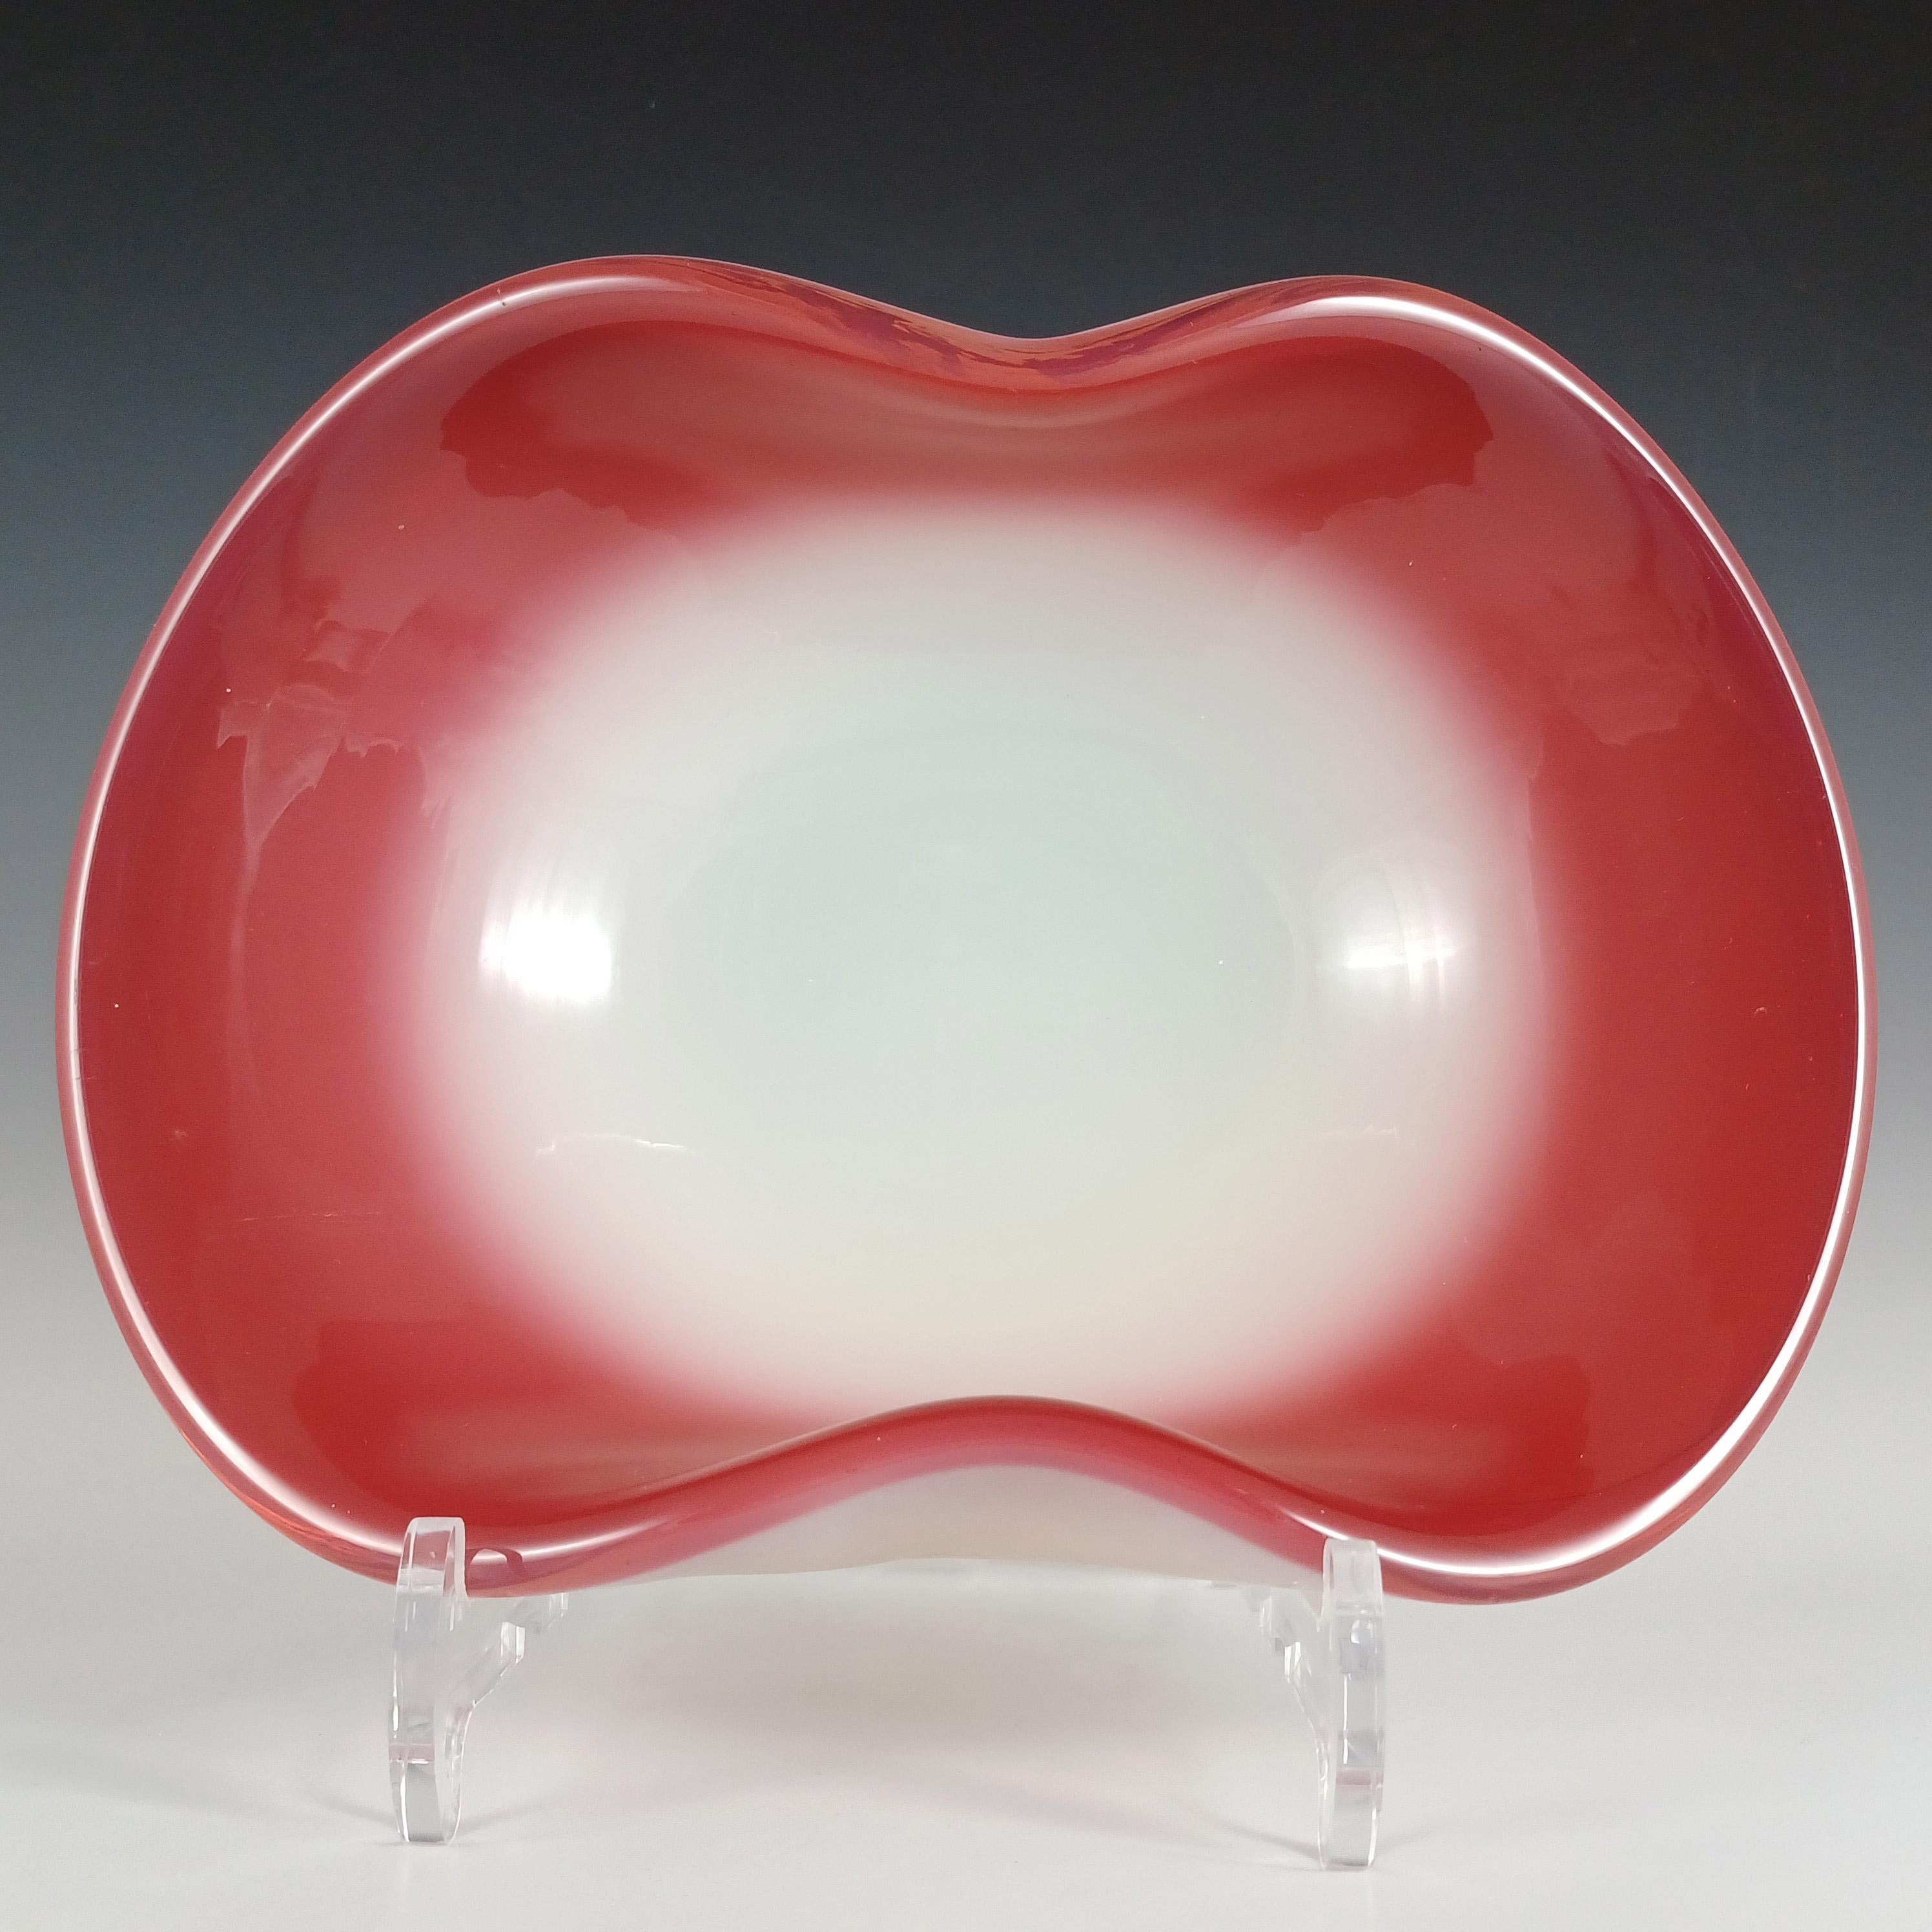 Dies ist eine prächtige, große und schwere (1,5 kg unverpackt) venezianische biomorphe Glasschale aus den 1950/60er Jahren, hergestellt auf der Insel Murano in der Nähe von Venedig, Italien. In einer atemberaubenden Kombination aus opakem rosa und